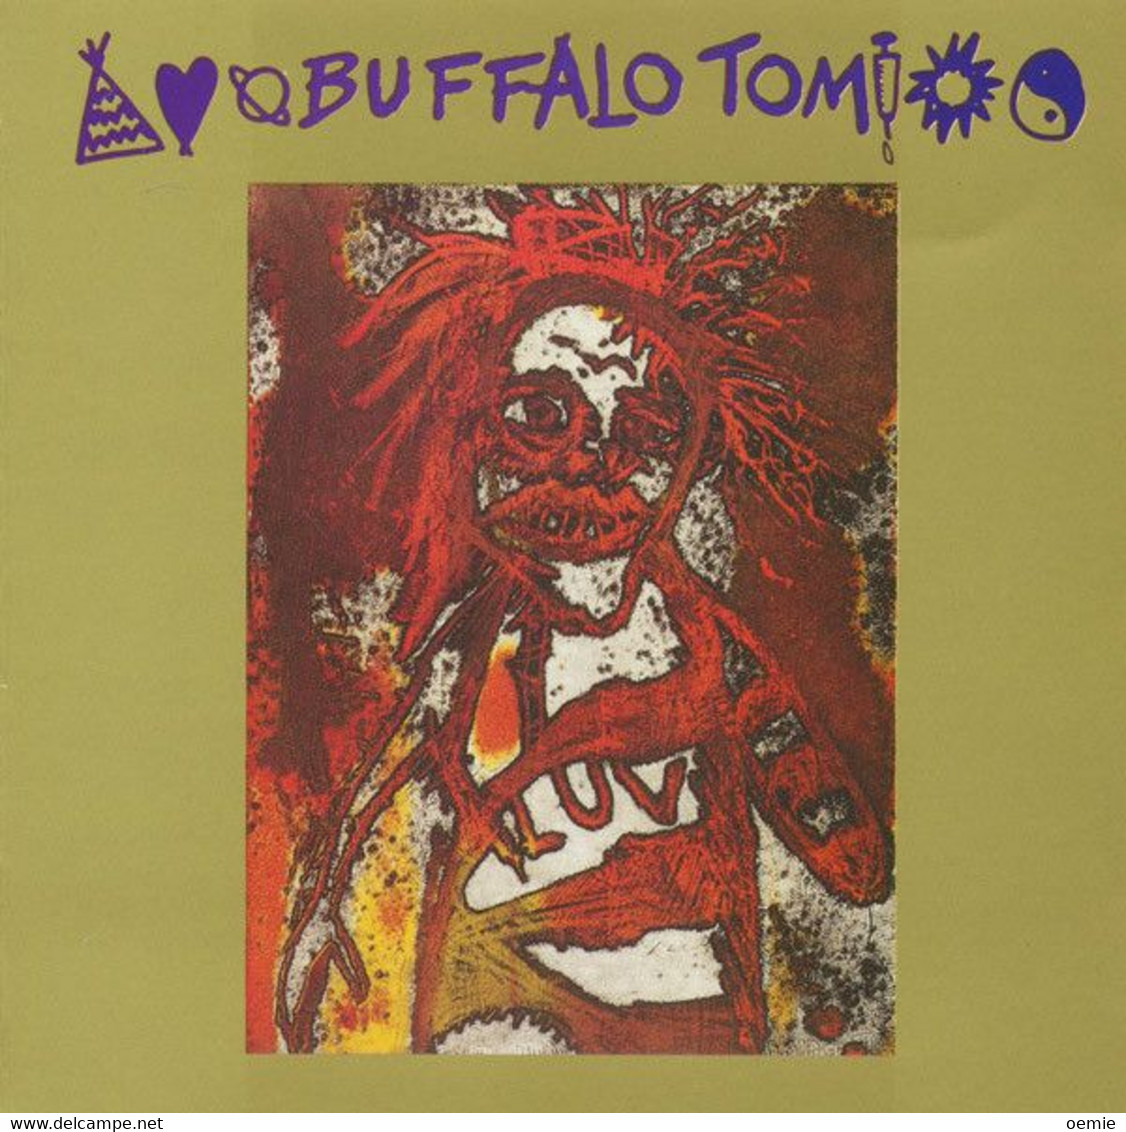 BUFFALO TOM    //  CD ALBUM NEUF SOUS CELLOPHANE - Rock